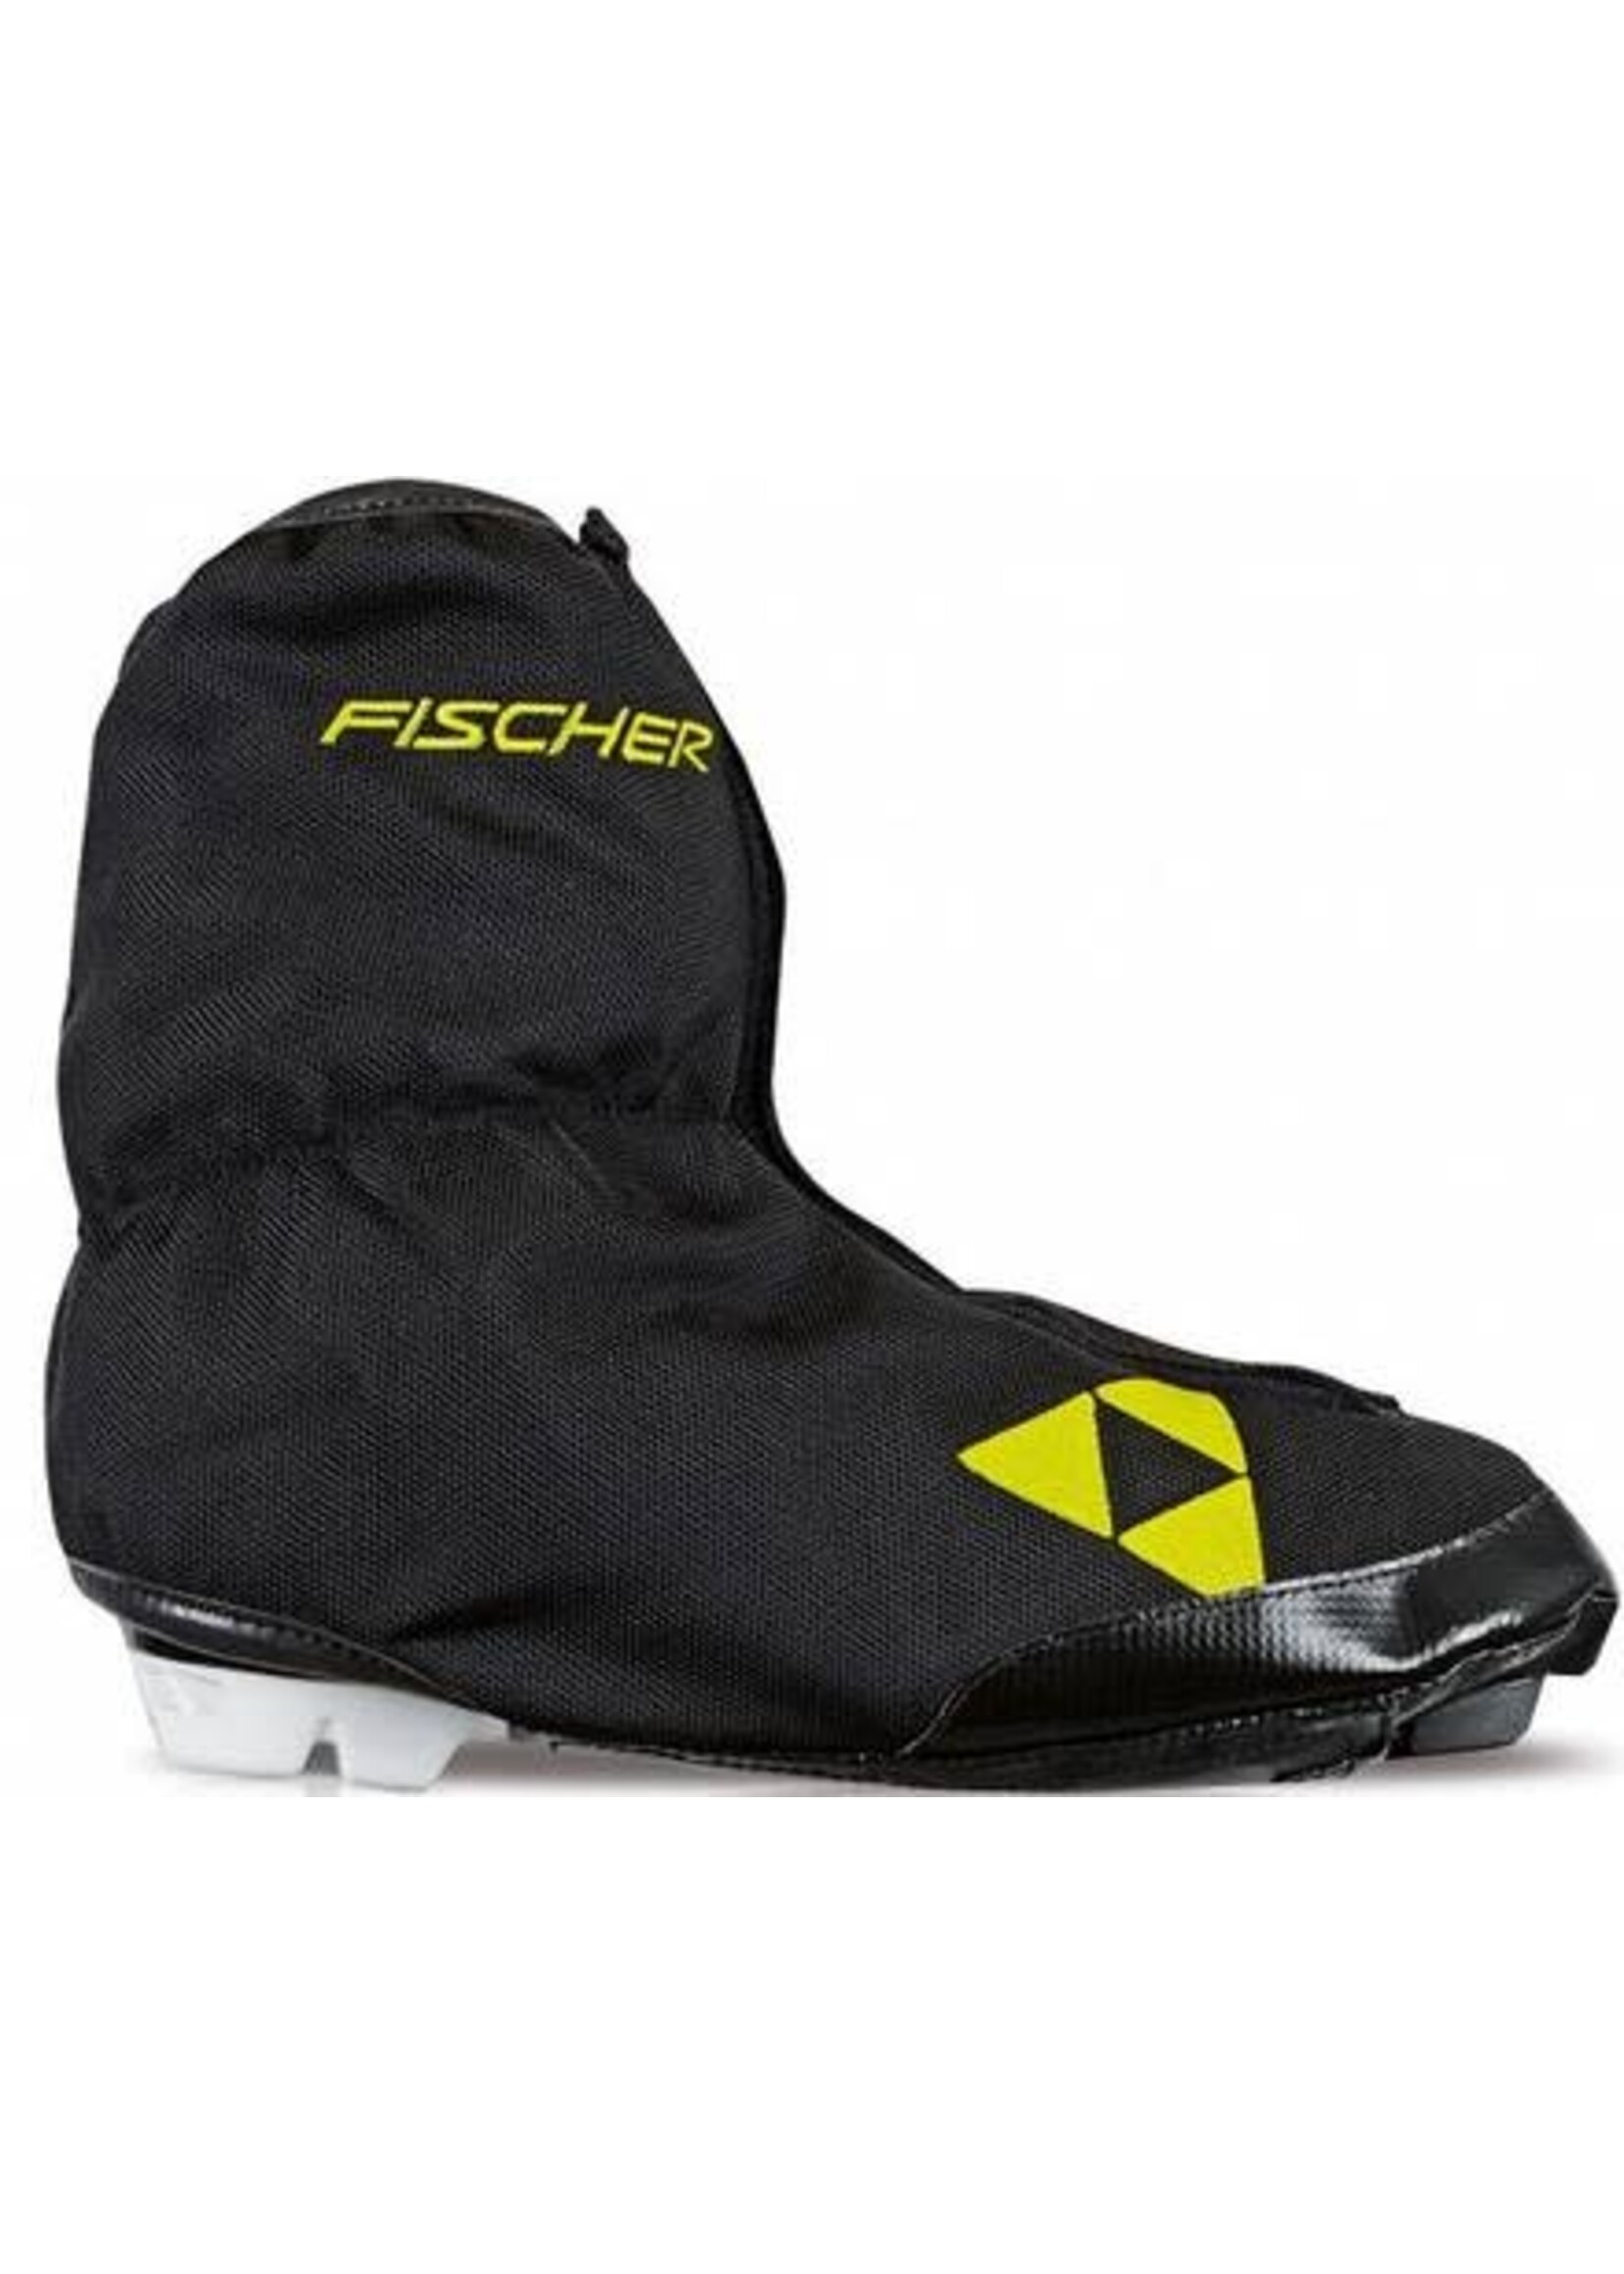 Fischer Fischer Boot Cover Arctic